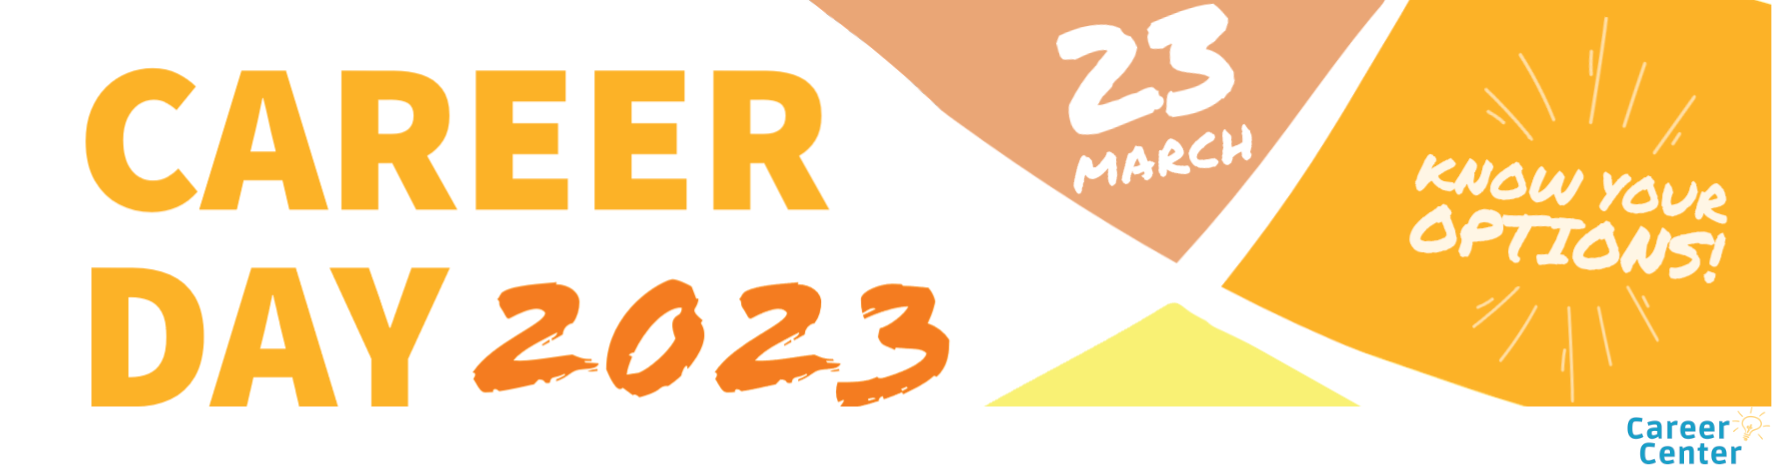 Banner des Career Day 2023 (gelb, orange, Datum: 23. März, Slogan: Know your options!)